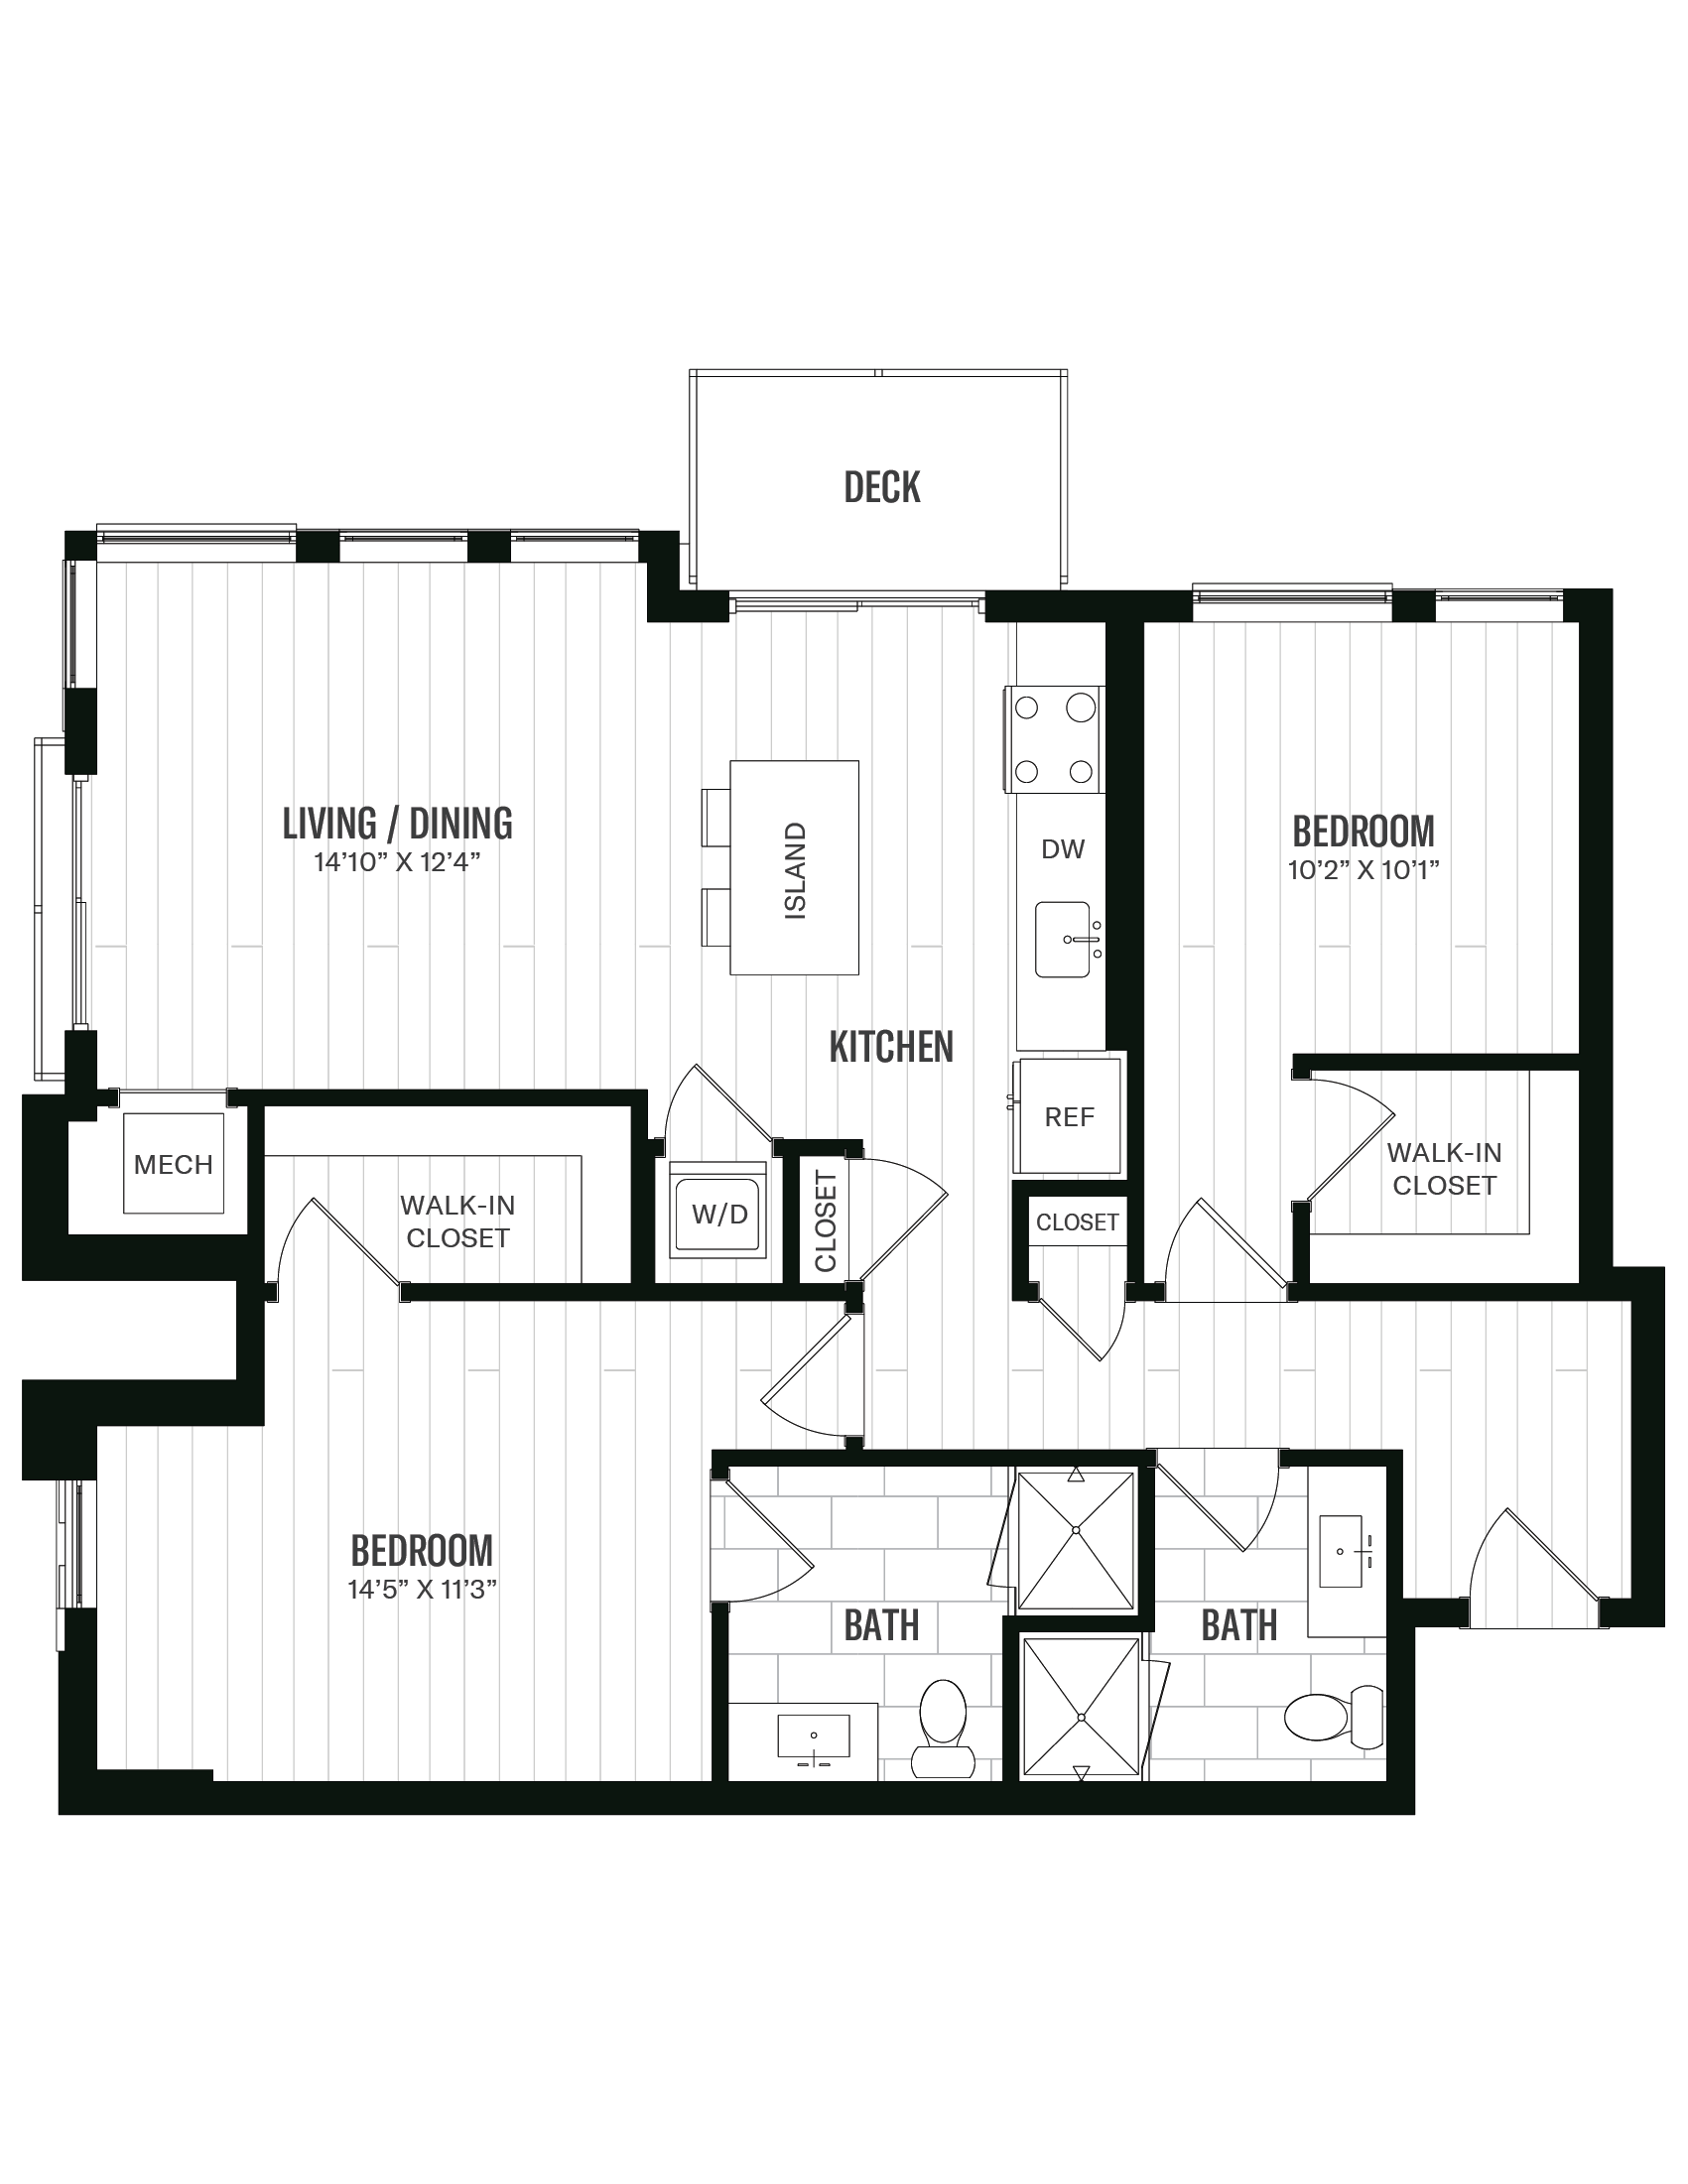 Floorplan image of unit 254